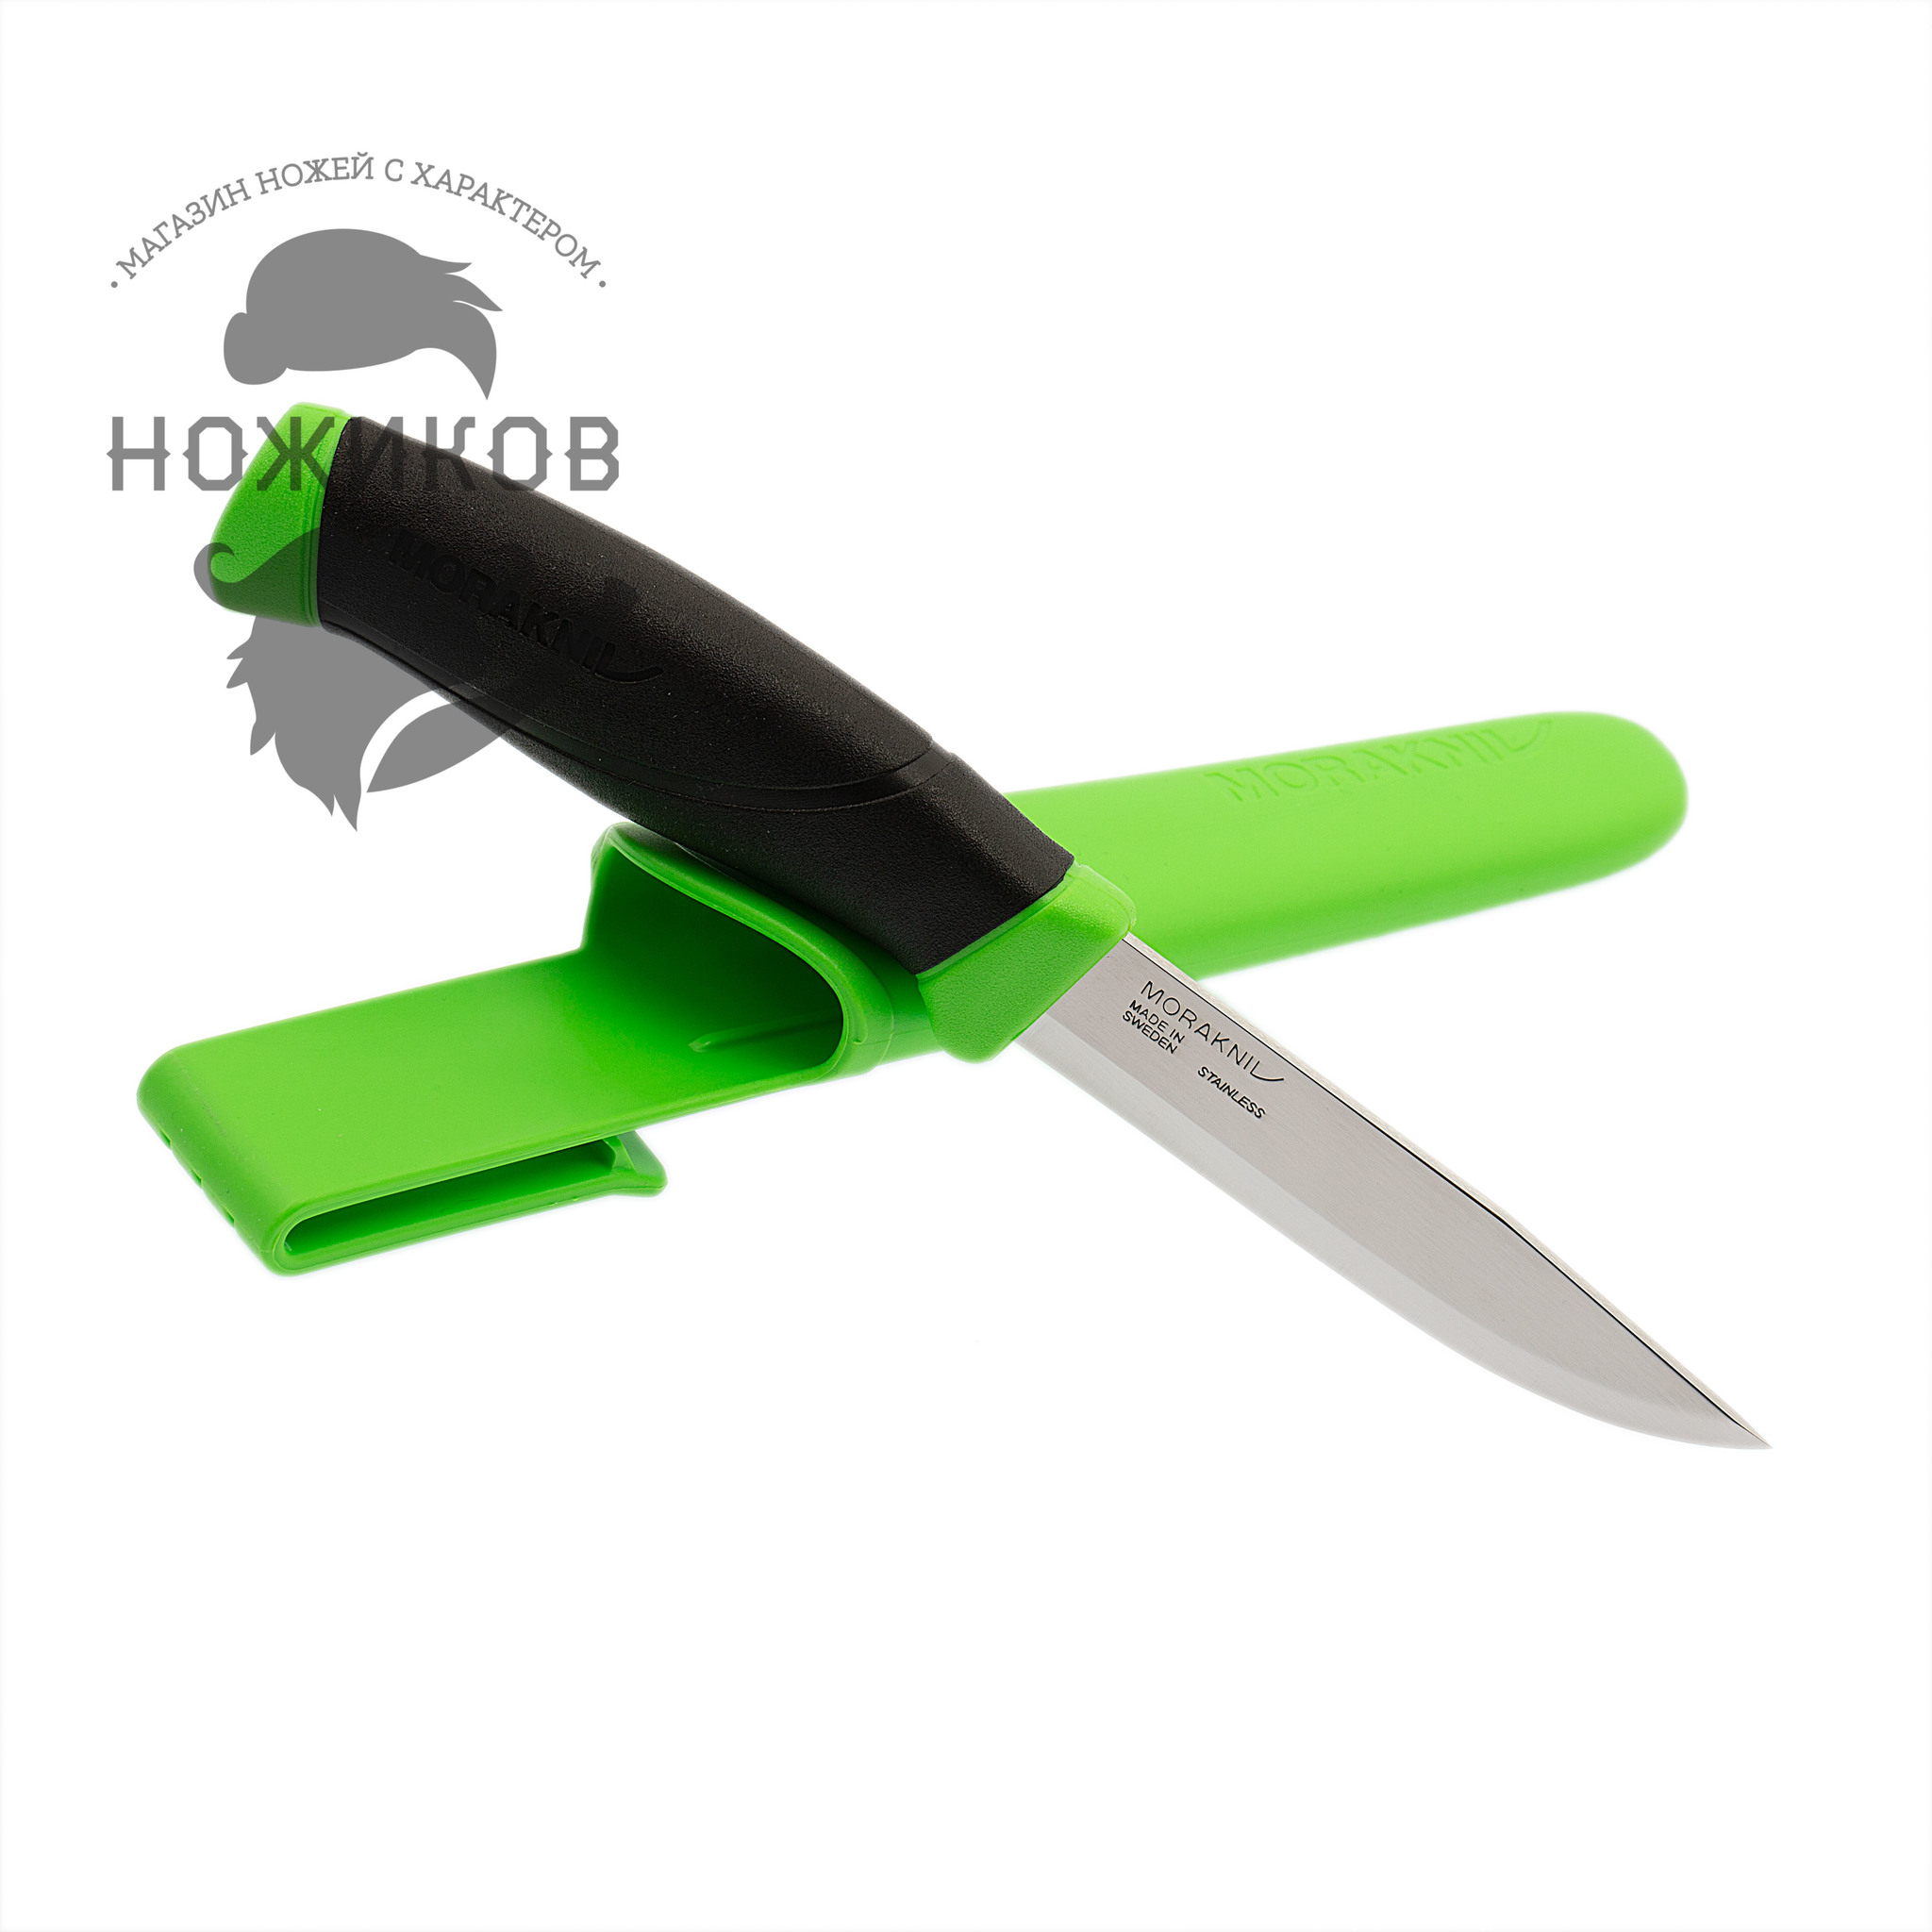 Нож с фиксированным лезвием Morakniv Companion Green, сталь Sandvik 12C27, рукоять пластик/резина, зеленый - фото 2